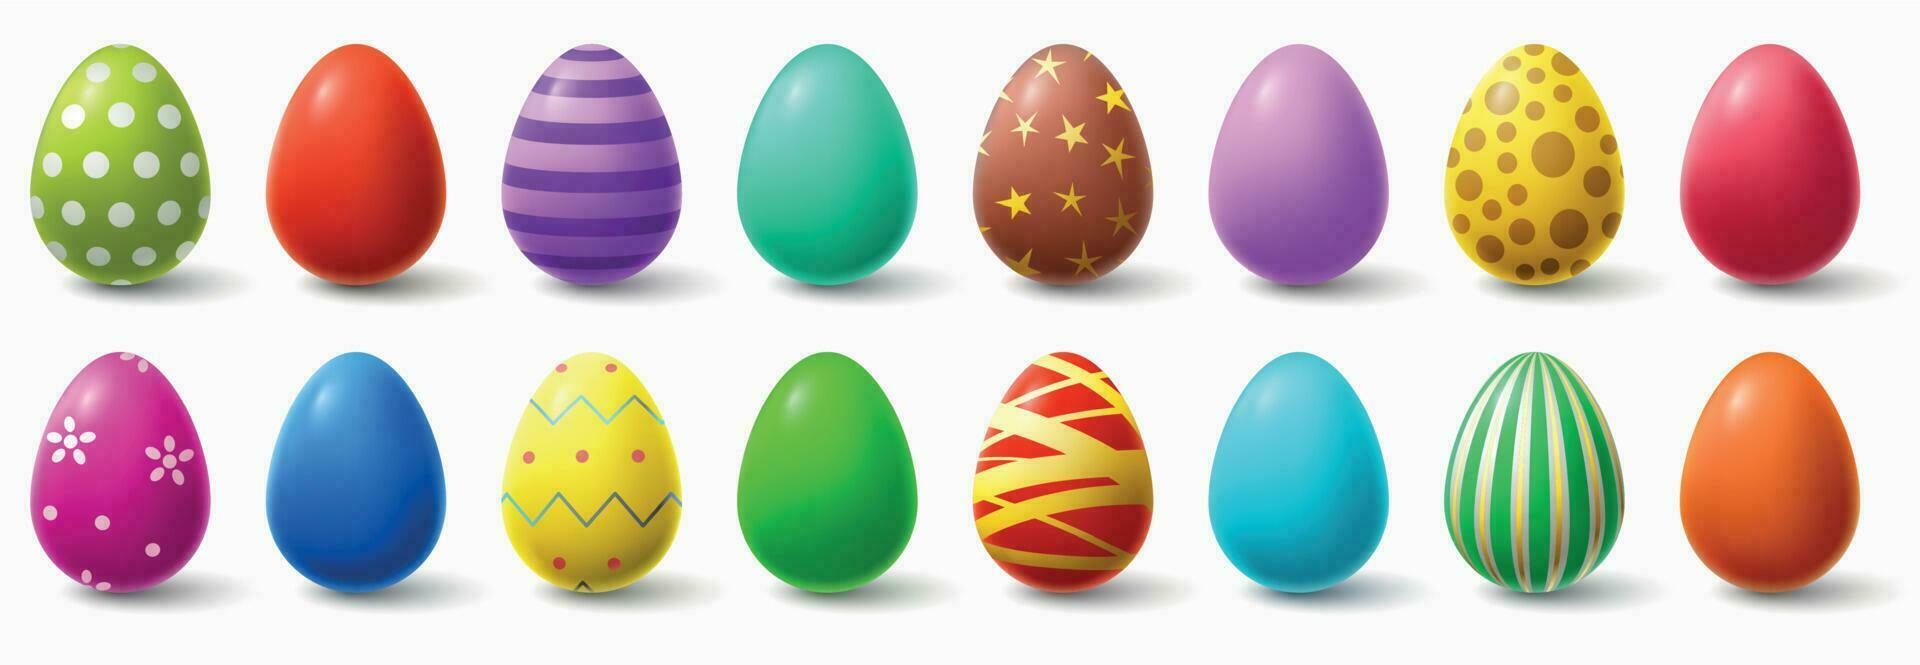 färgrik påsk ägg. Semester kyckling ägg dekor, påsk mönster realistisk isolerat vektor illustration uppsättning